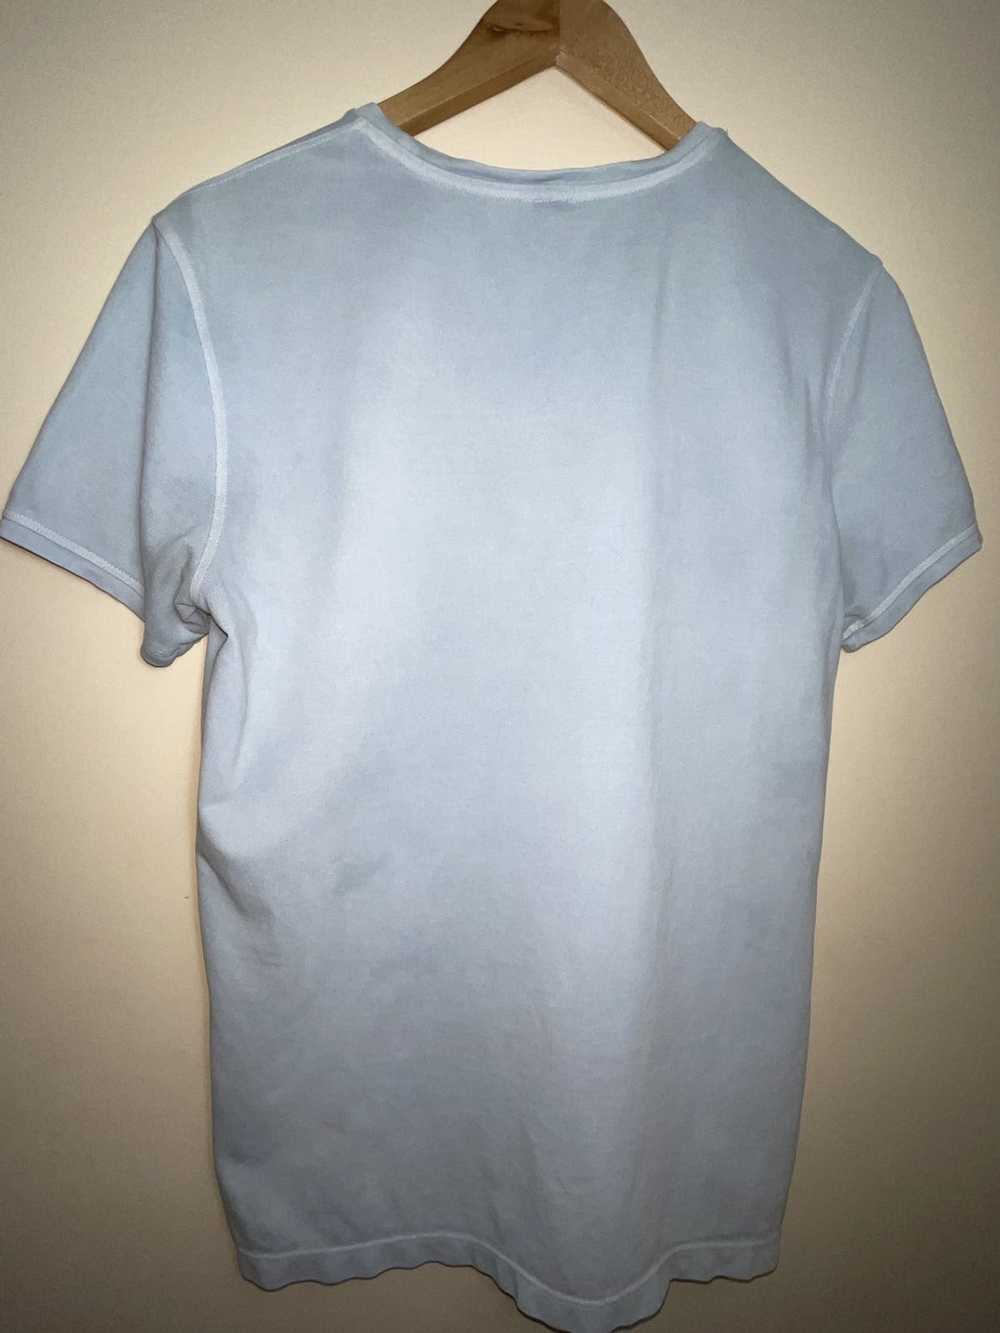 Fendi × Vintage Fendi tee shirt - image 2